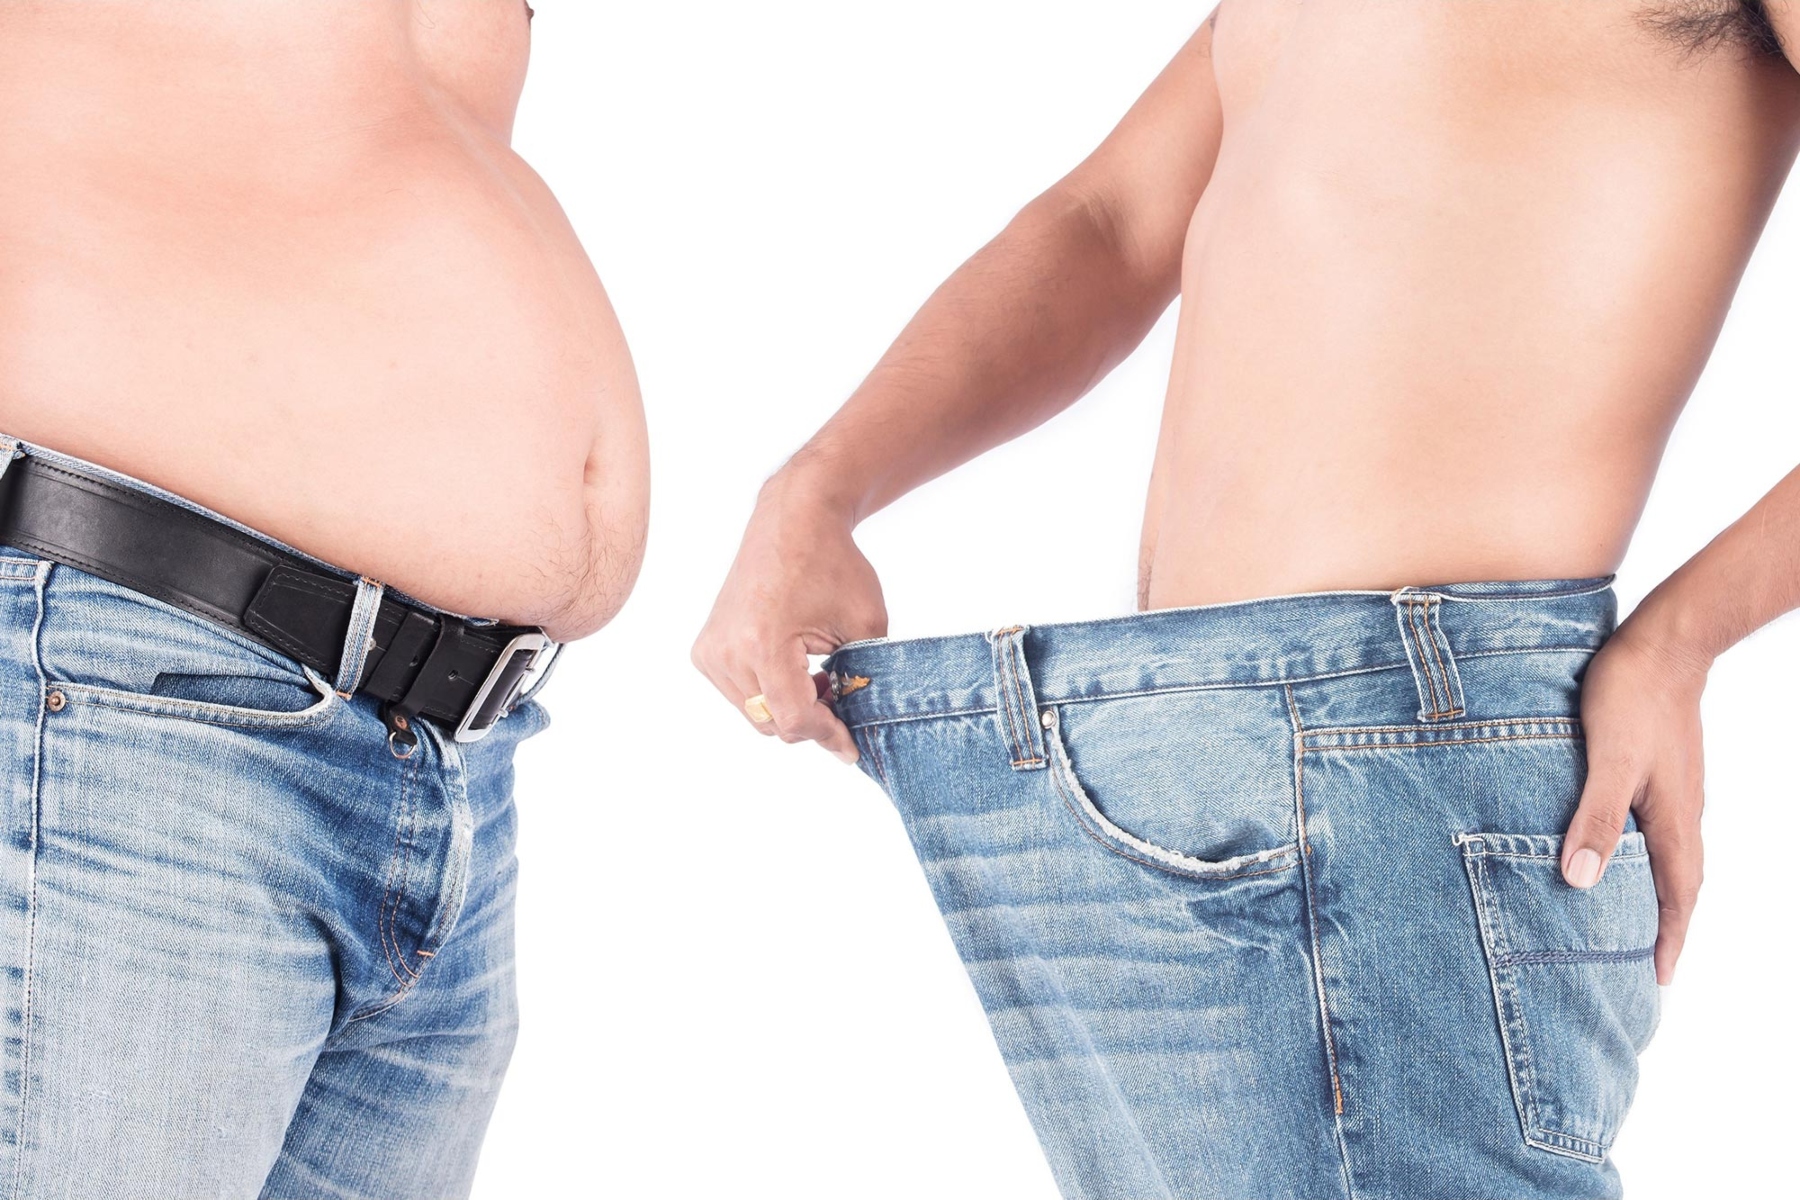 Δίαιτα κίνδυνοι: Η δίαιτα εγκυμονεί σοβαρούς κρυφούς κινδύνους